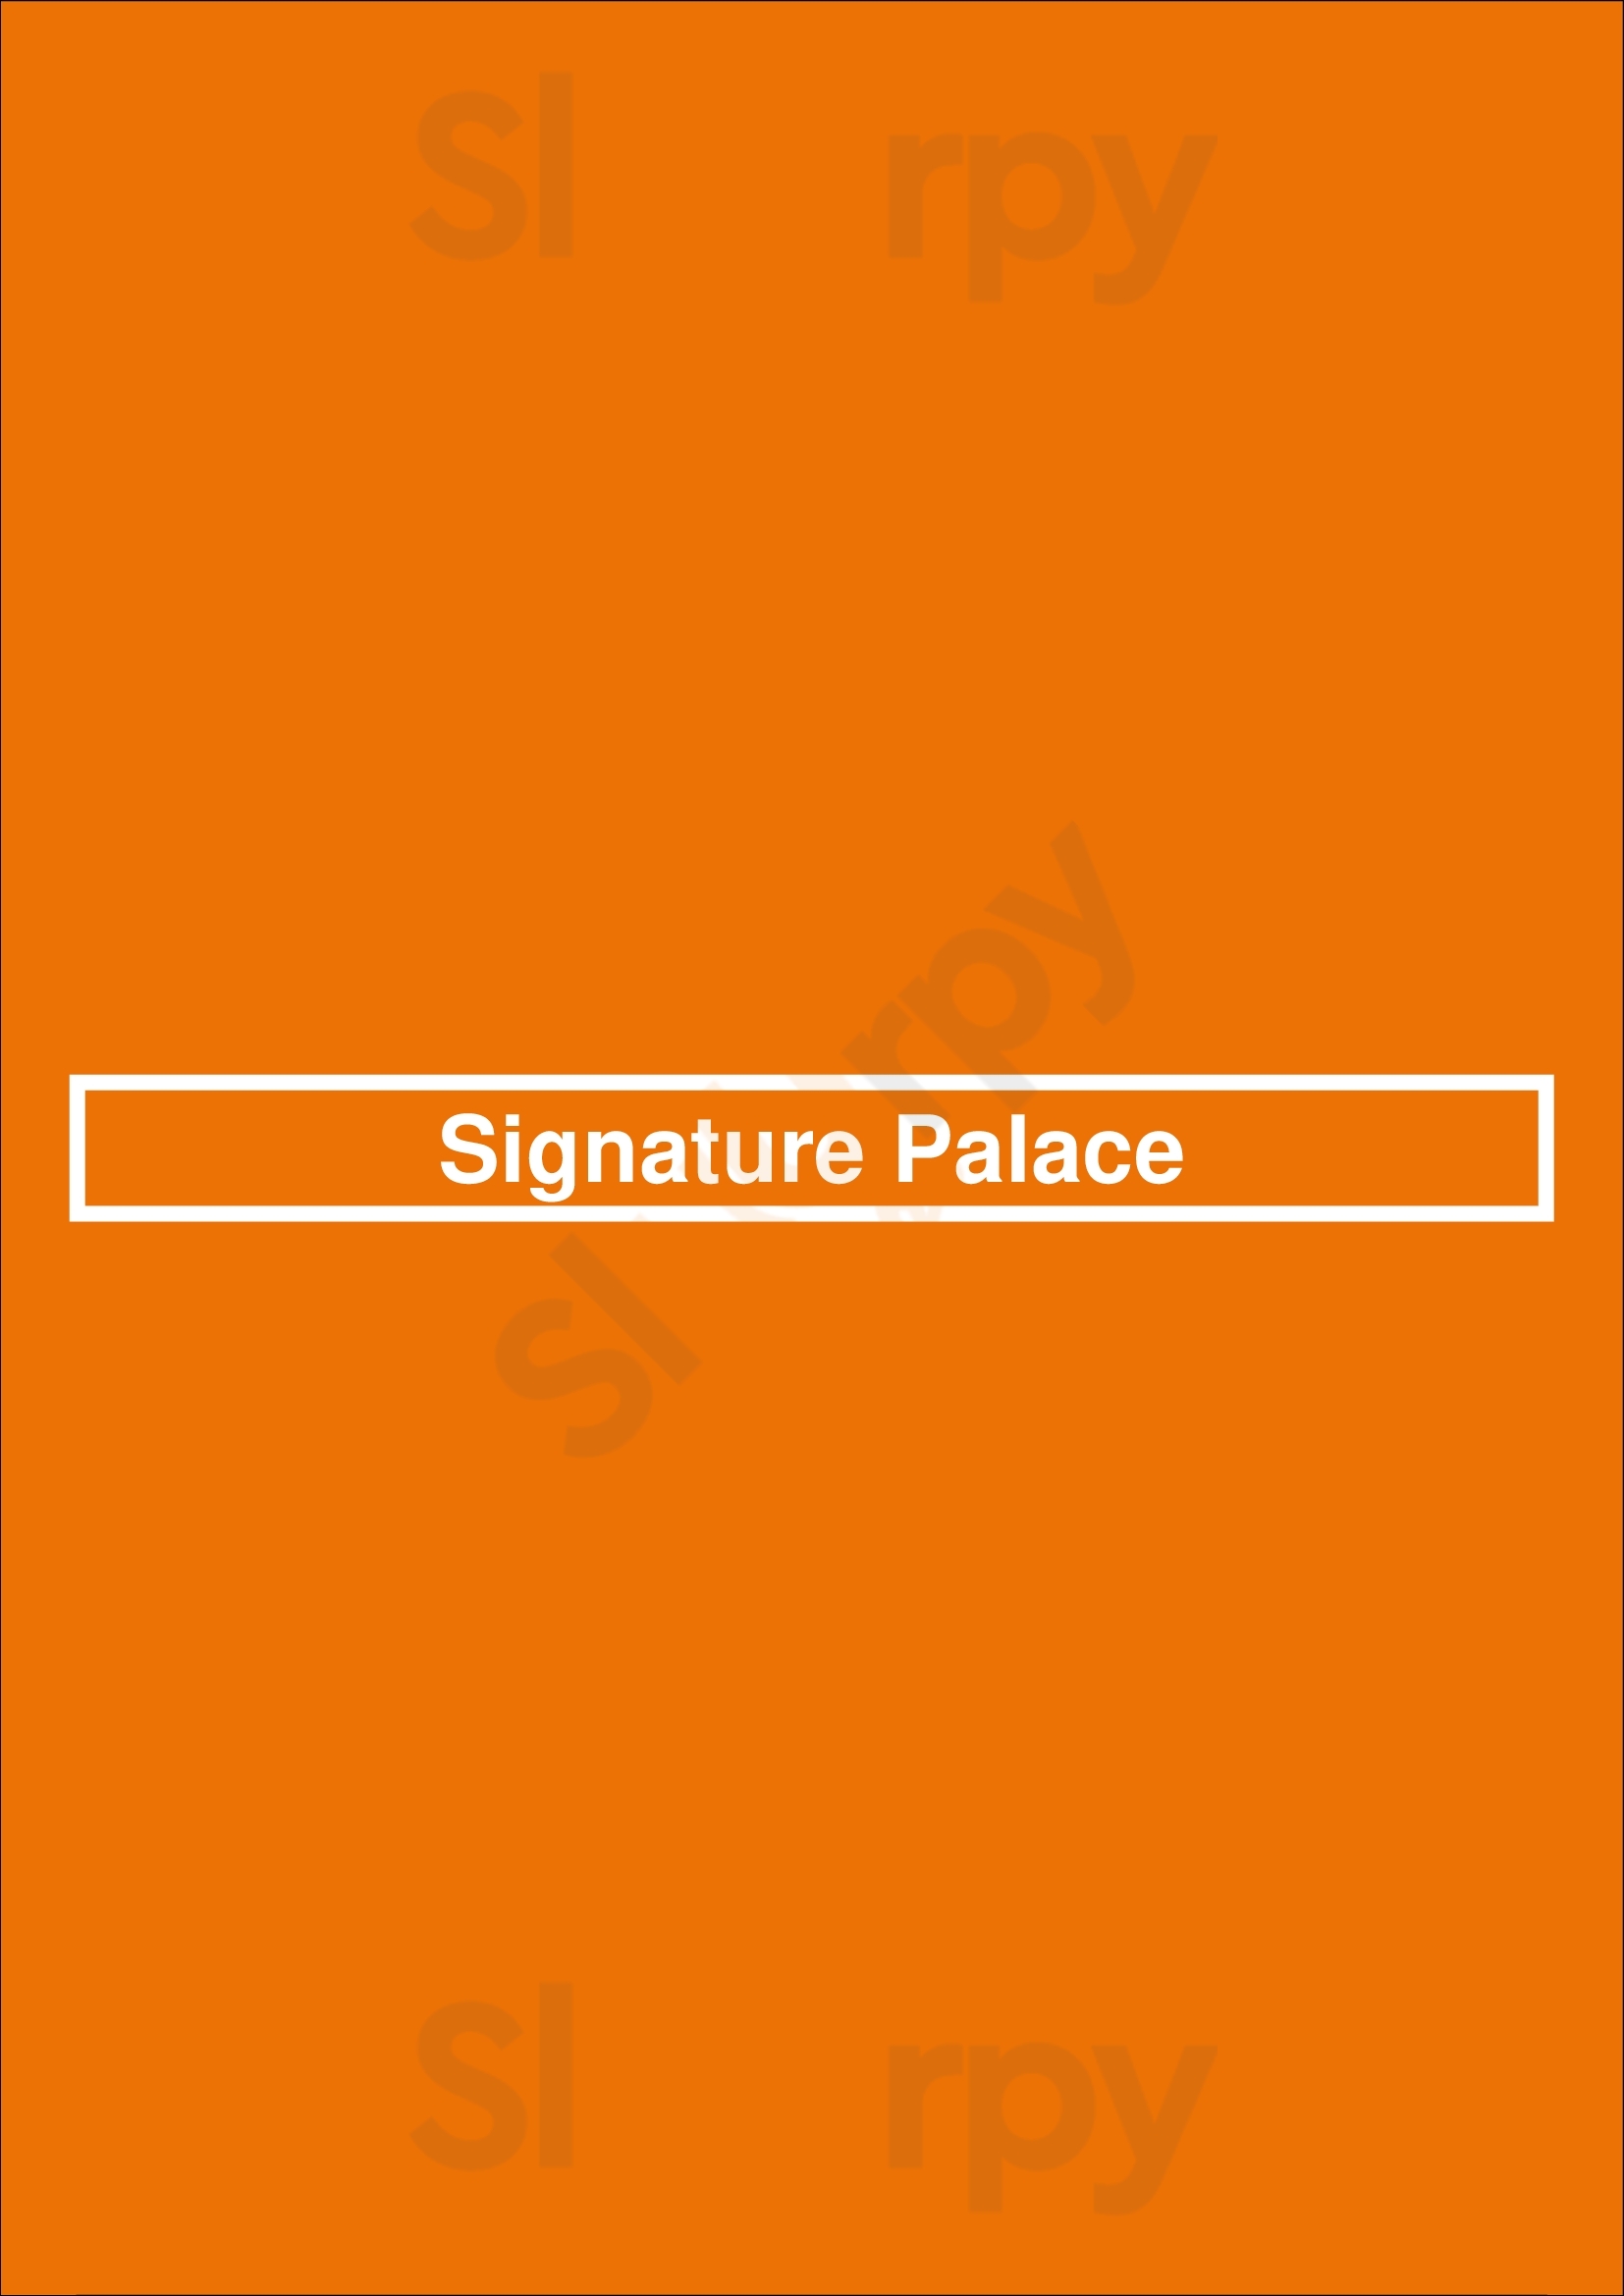 Signature Palace Calgary Menu - 1